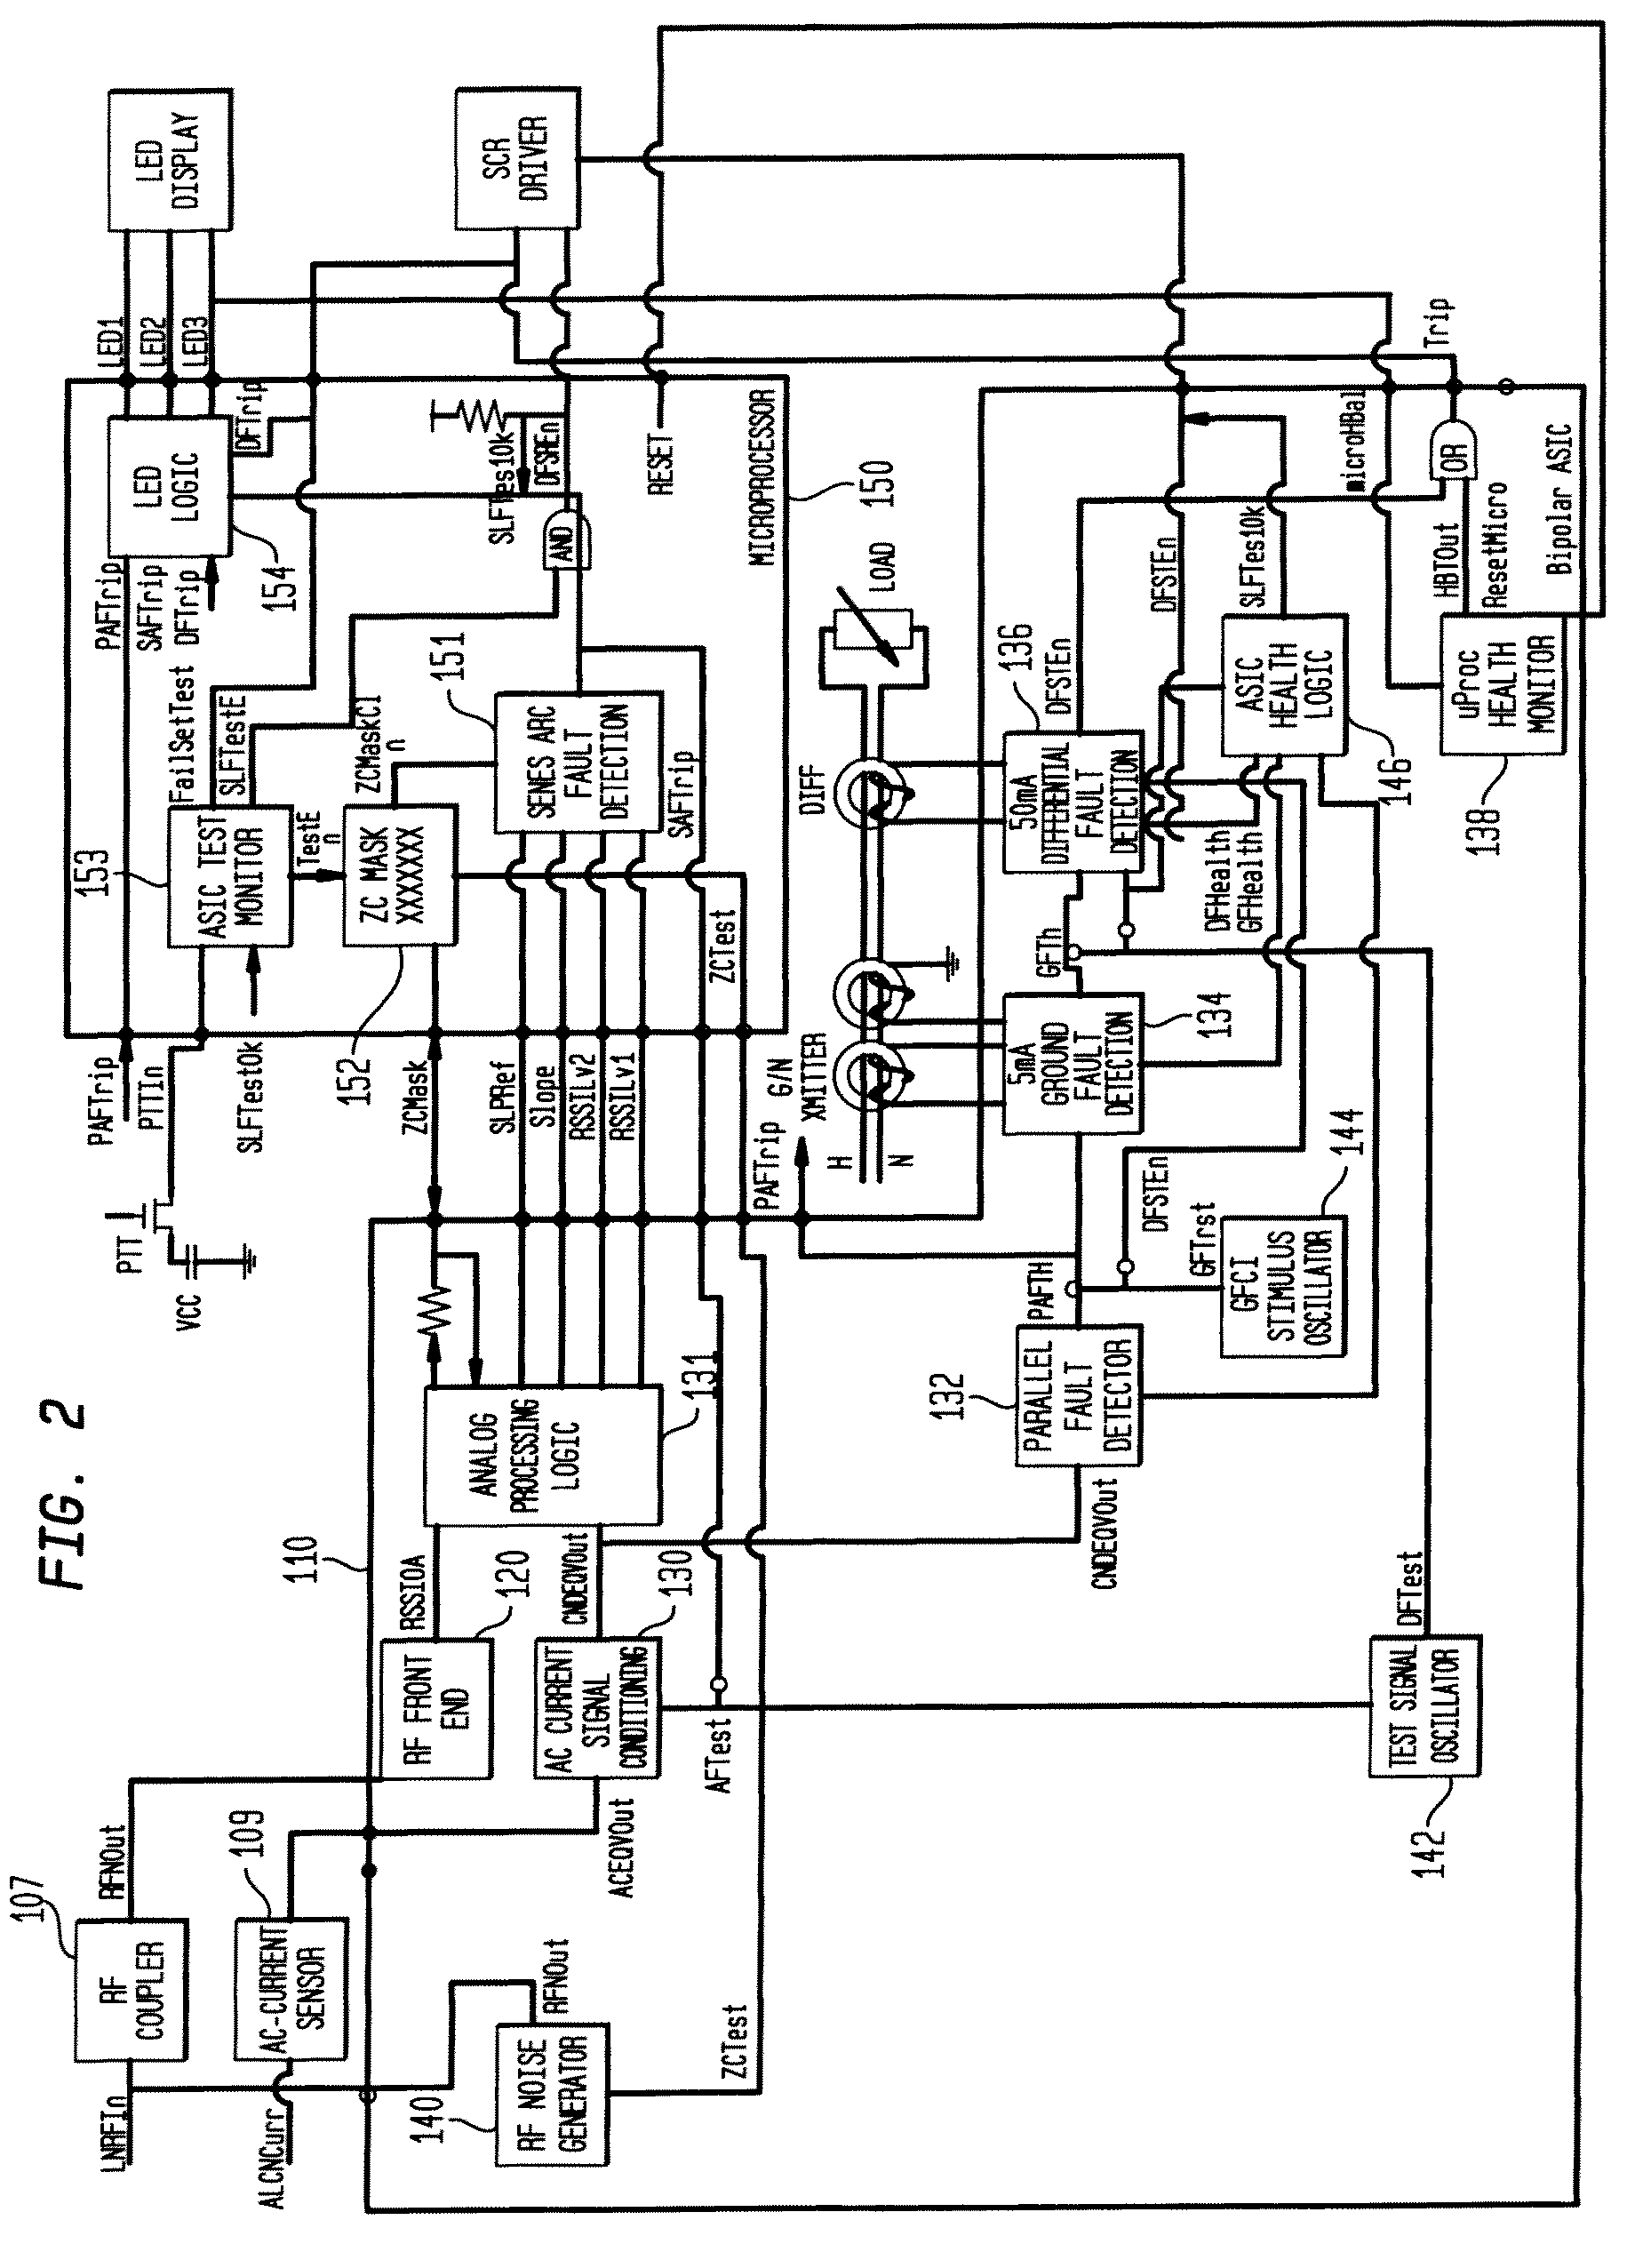 Multifunctional residential circuit breaker